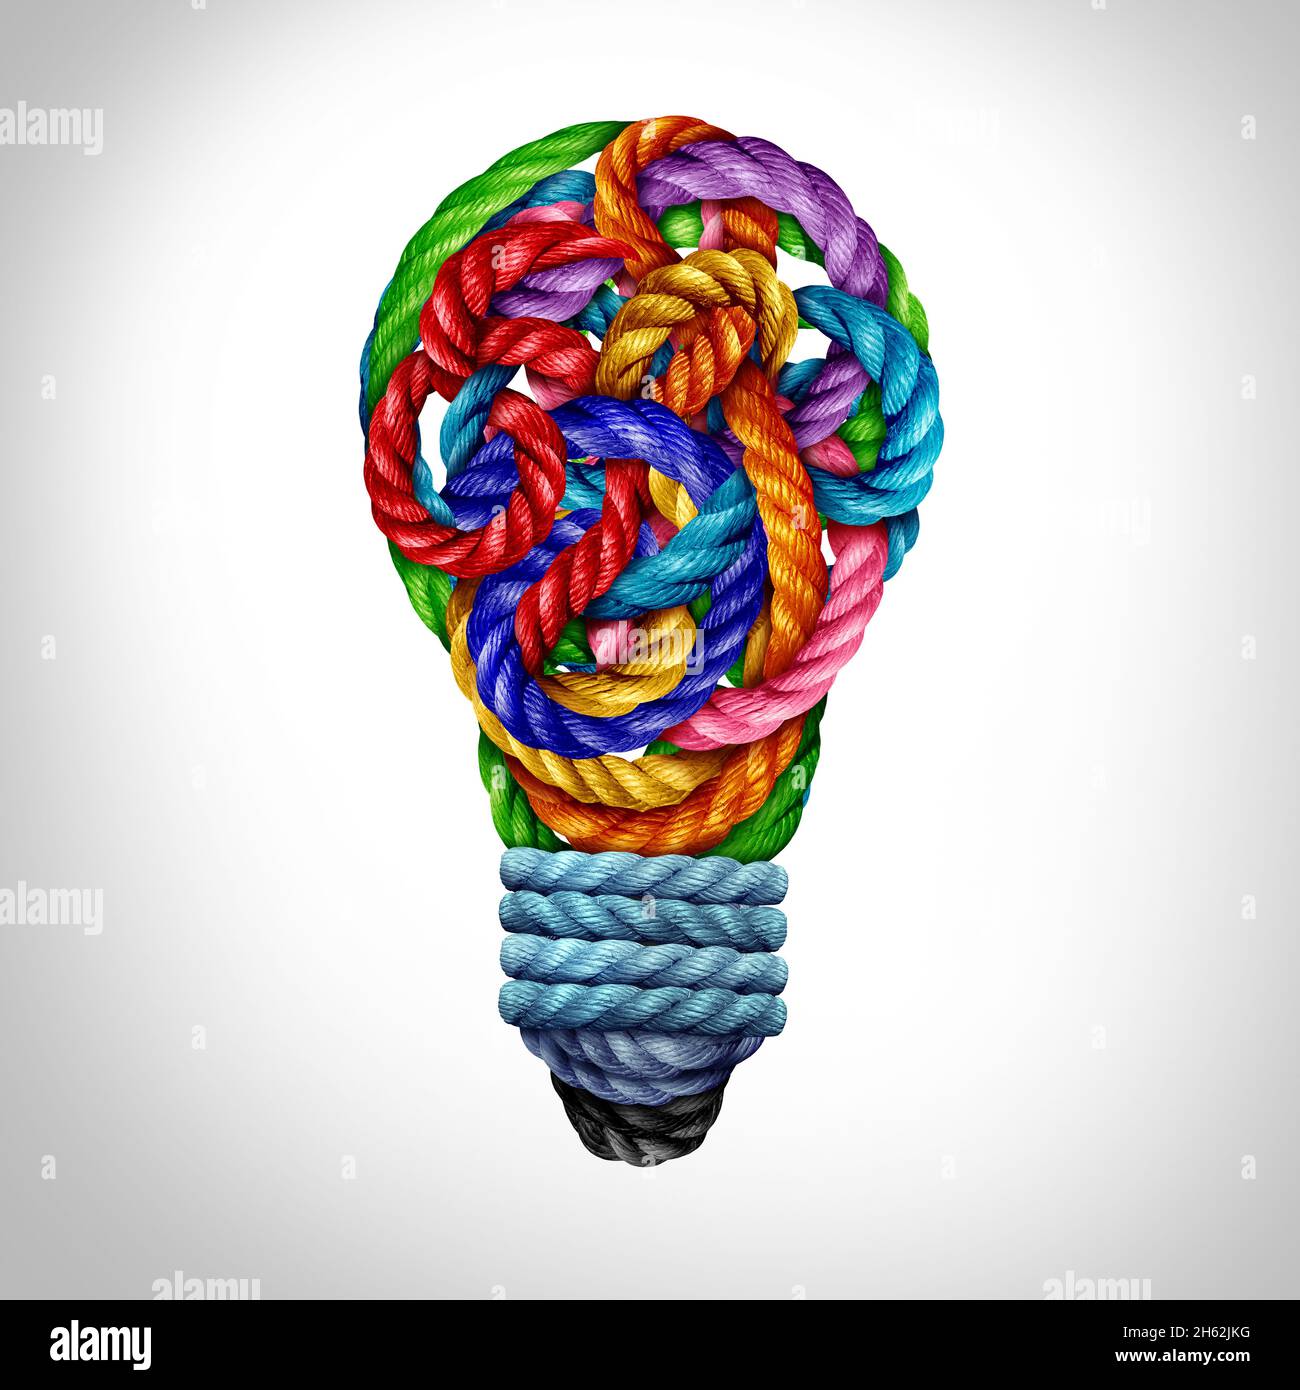 Kreatives Ideensymbol und starkes Ideensymbol Konzept als Kreativitäts-Glühbirne aus verschiedenen Seilen, die innovatives Denken repräsentieren. Stockfoto